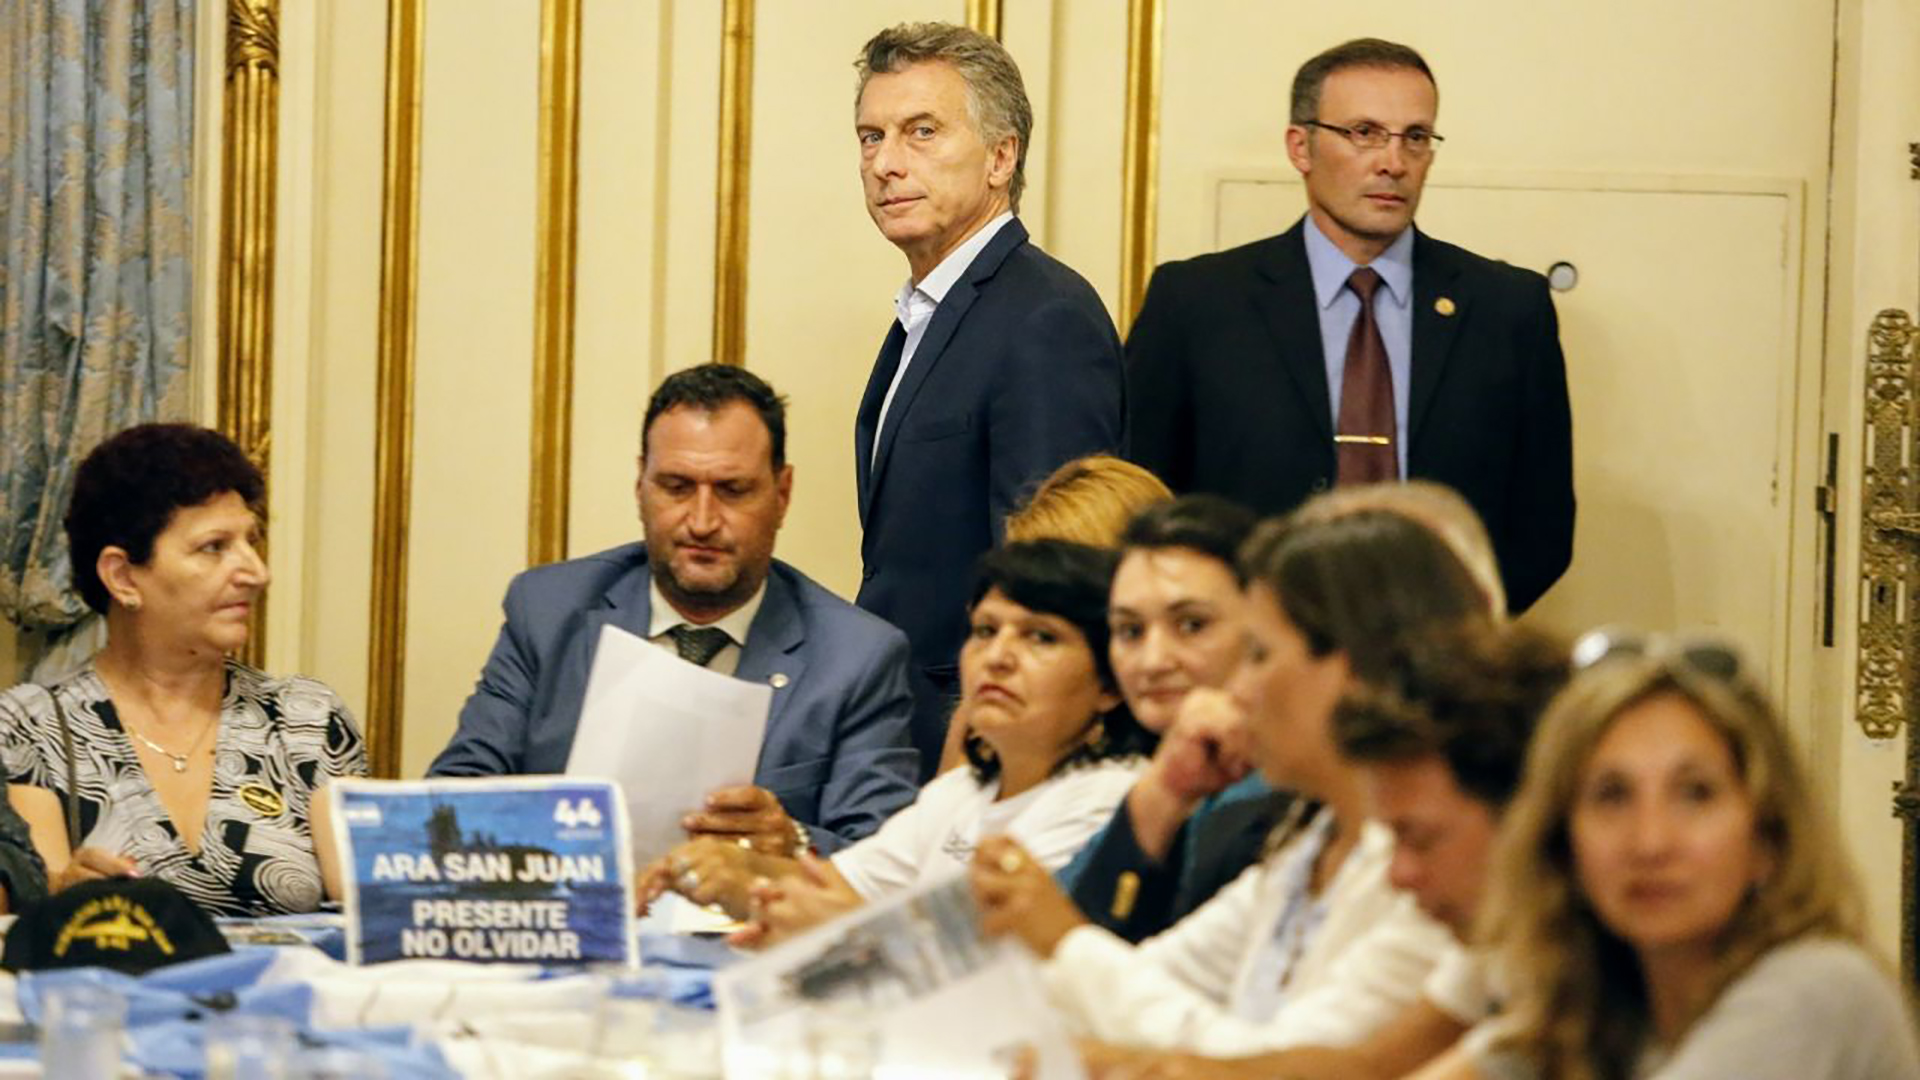 Reunión en la Casa Rosada de Mauricio Macri con los familiares del Ara San Juan (Nicolás Aboaf/ archivo)